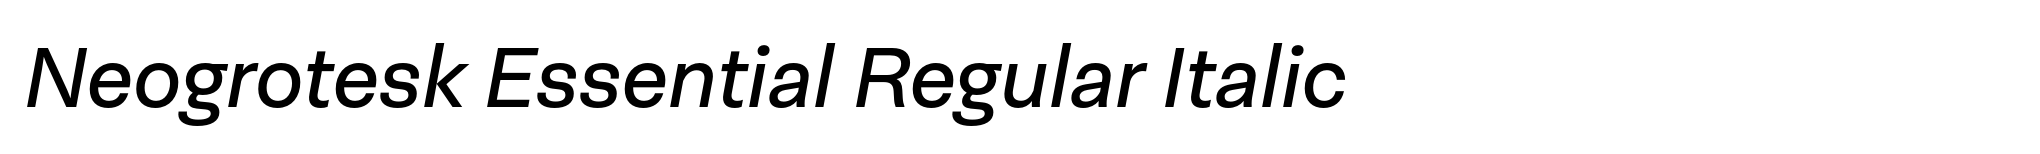 Neogrotesk Essential Regular Italic image